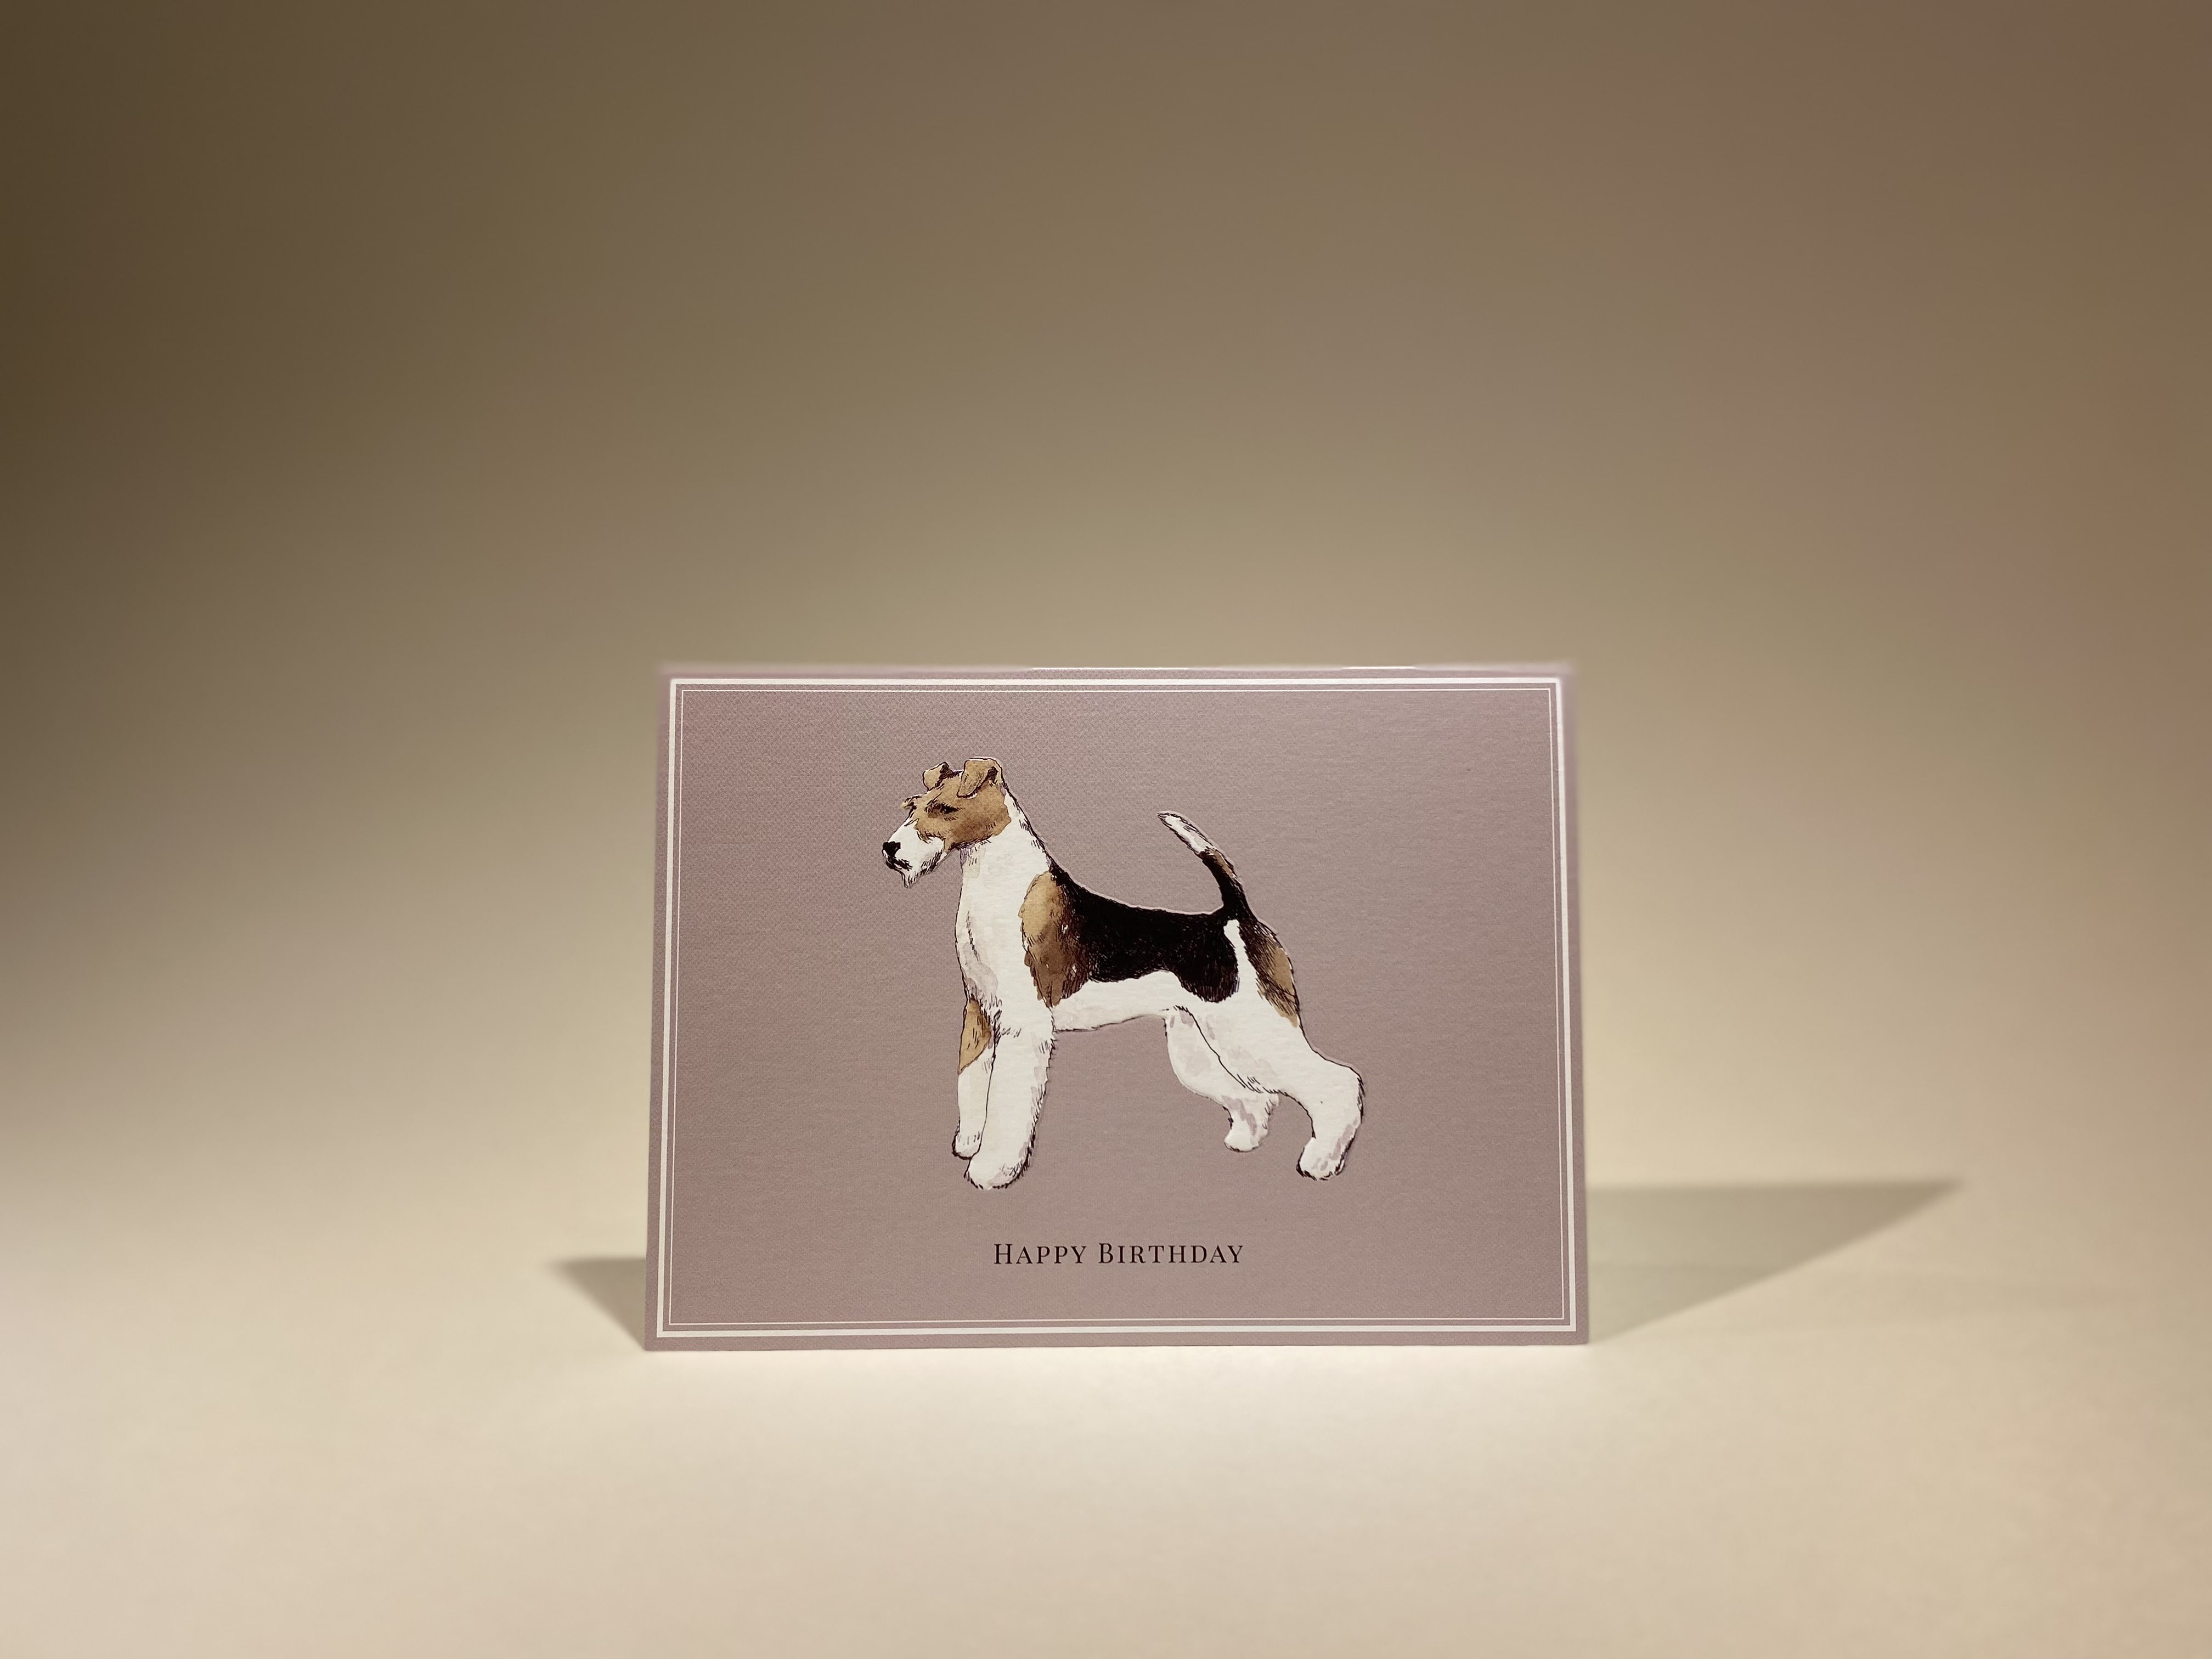 와이어 폭스 테리어 강아지 생일축하 카드